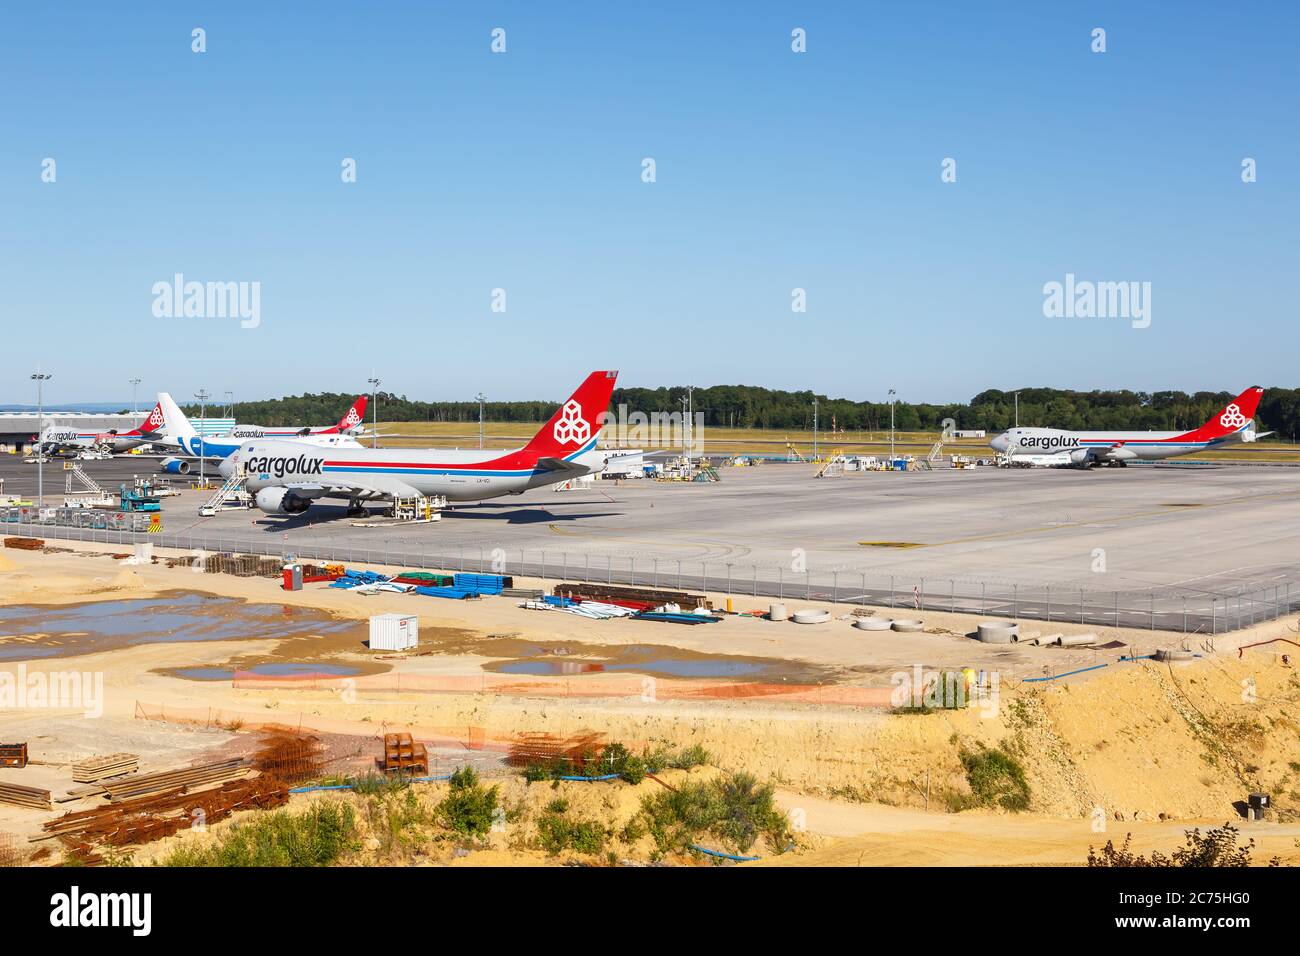 Findel, Luxembourg - 24 juin 2020 : avions Cargolux Boeing 747-8F à l'aéroport Findel (lux) au Luxembourg. Boeing est un fabricant d'avions américain Banque D'Images